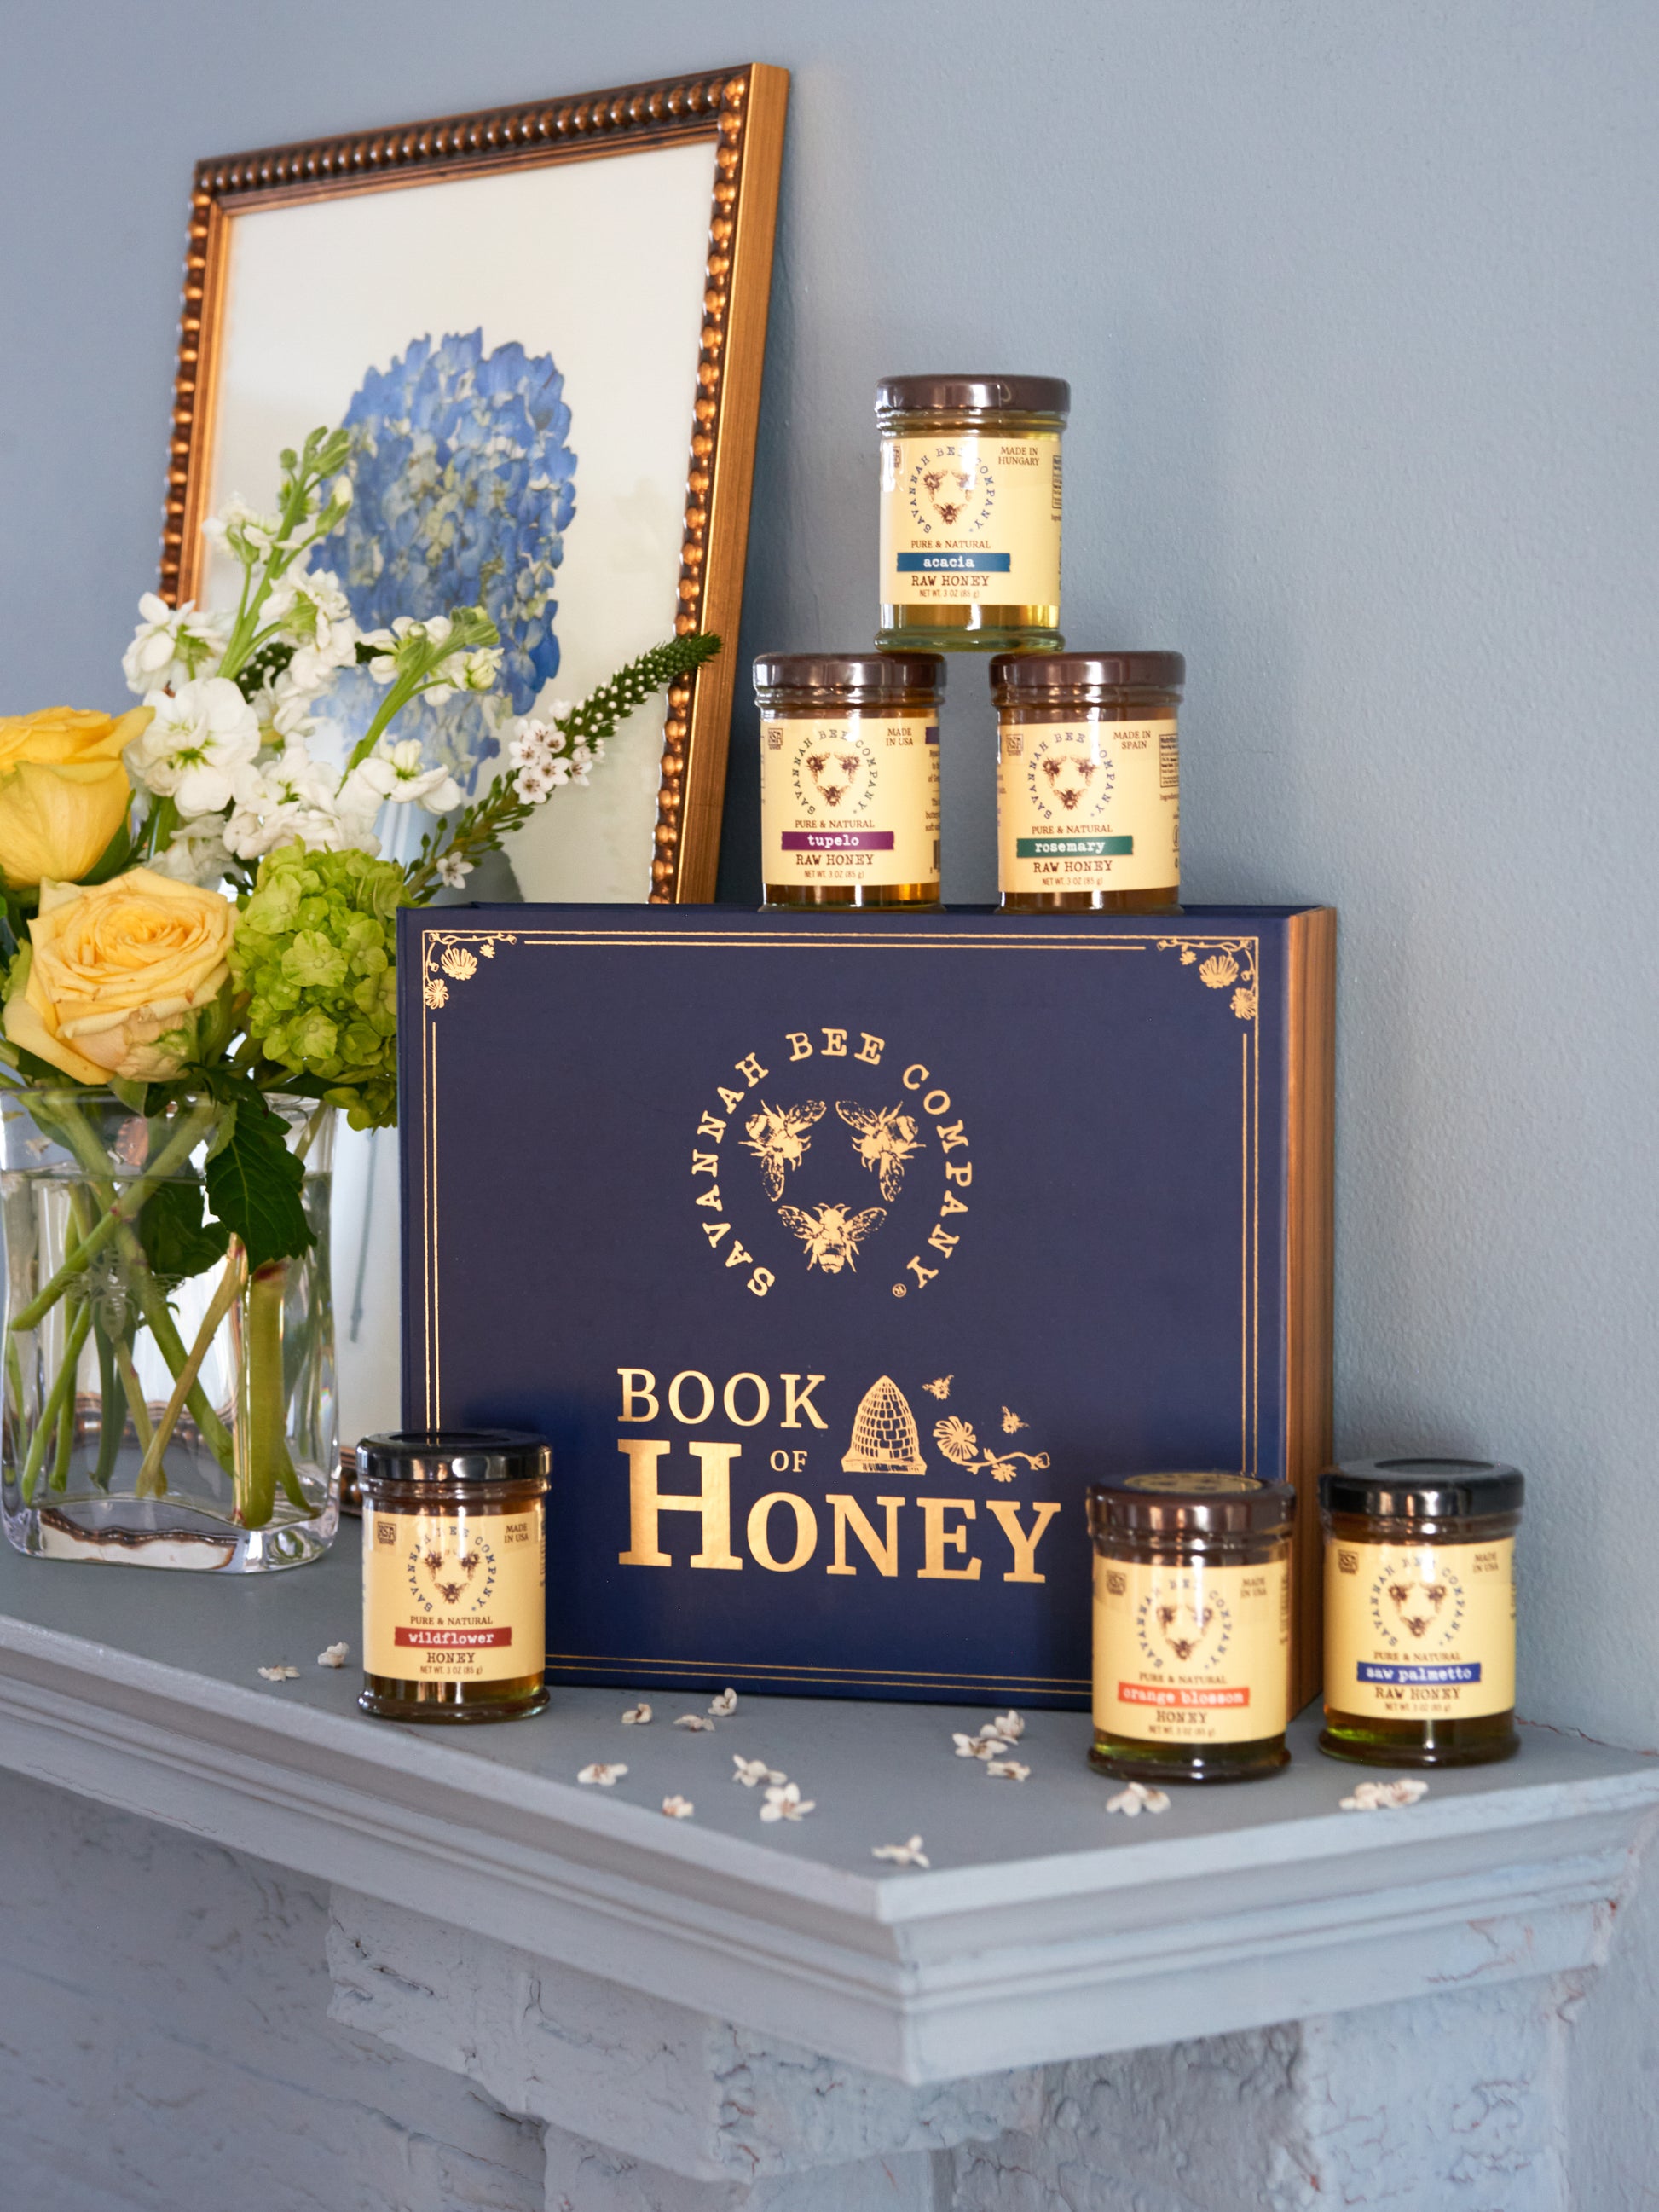 Shop the Savannah Bee Company Book of Honey at Weston Table